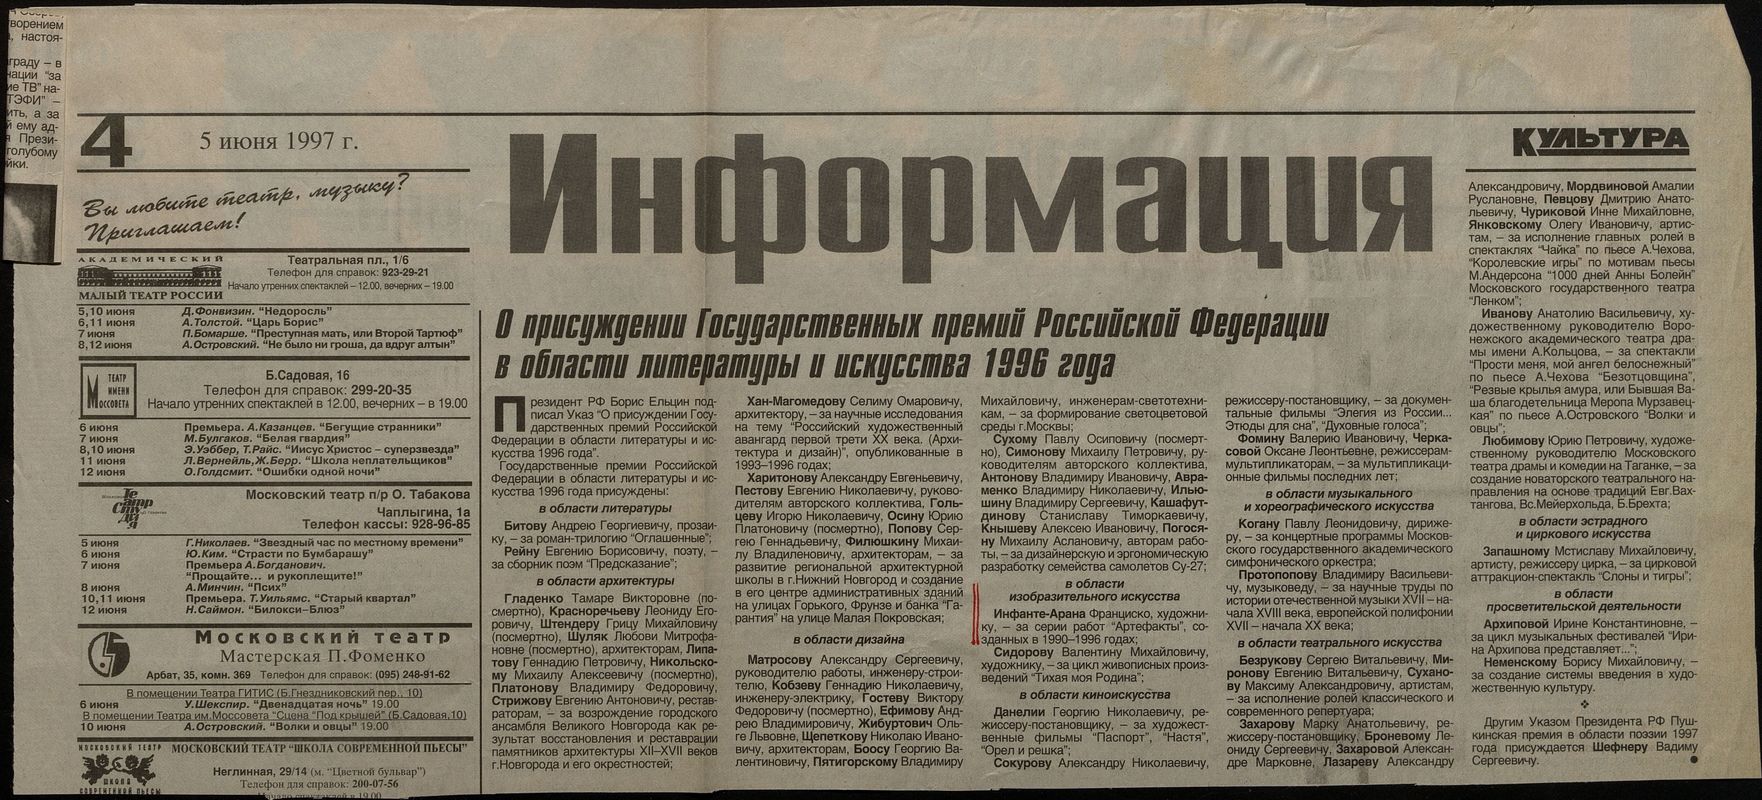 О присуждении Государственных премий Российской Федерации в области литературы и искусства 1996 года